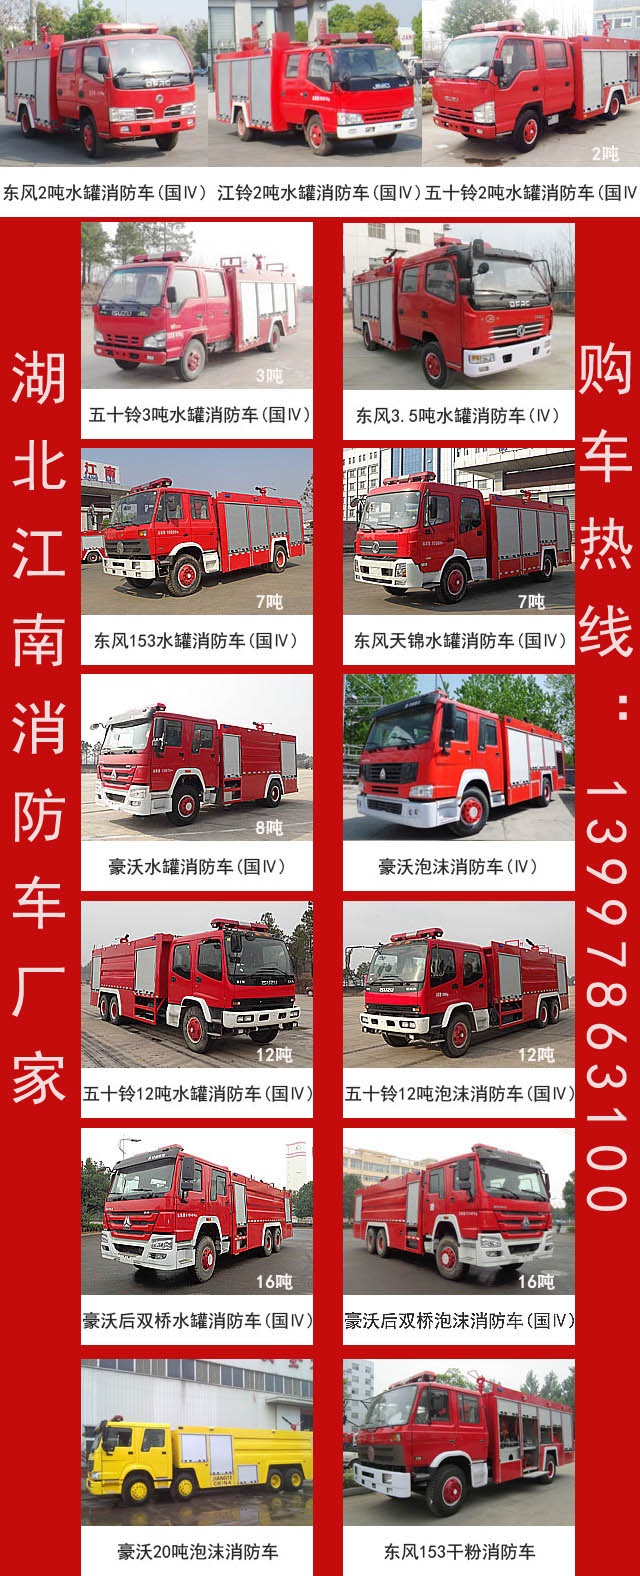 消防车产品汇总图